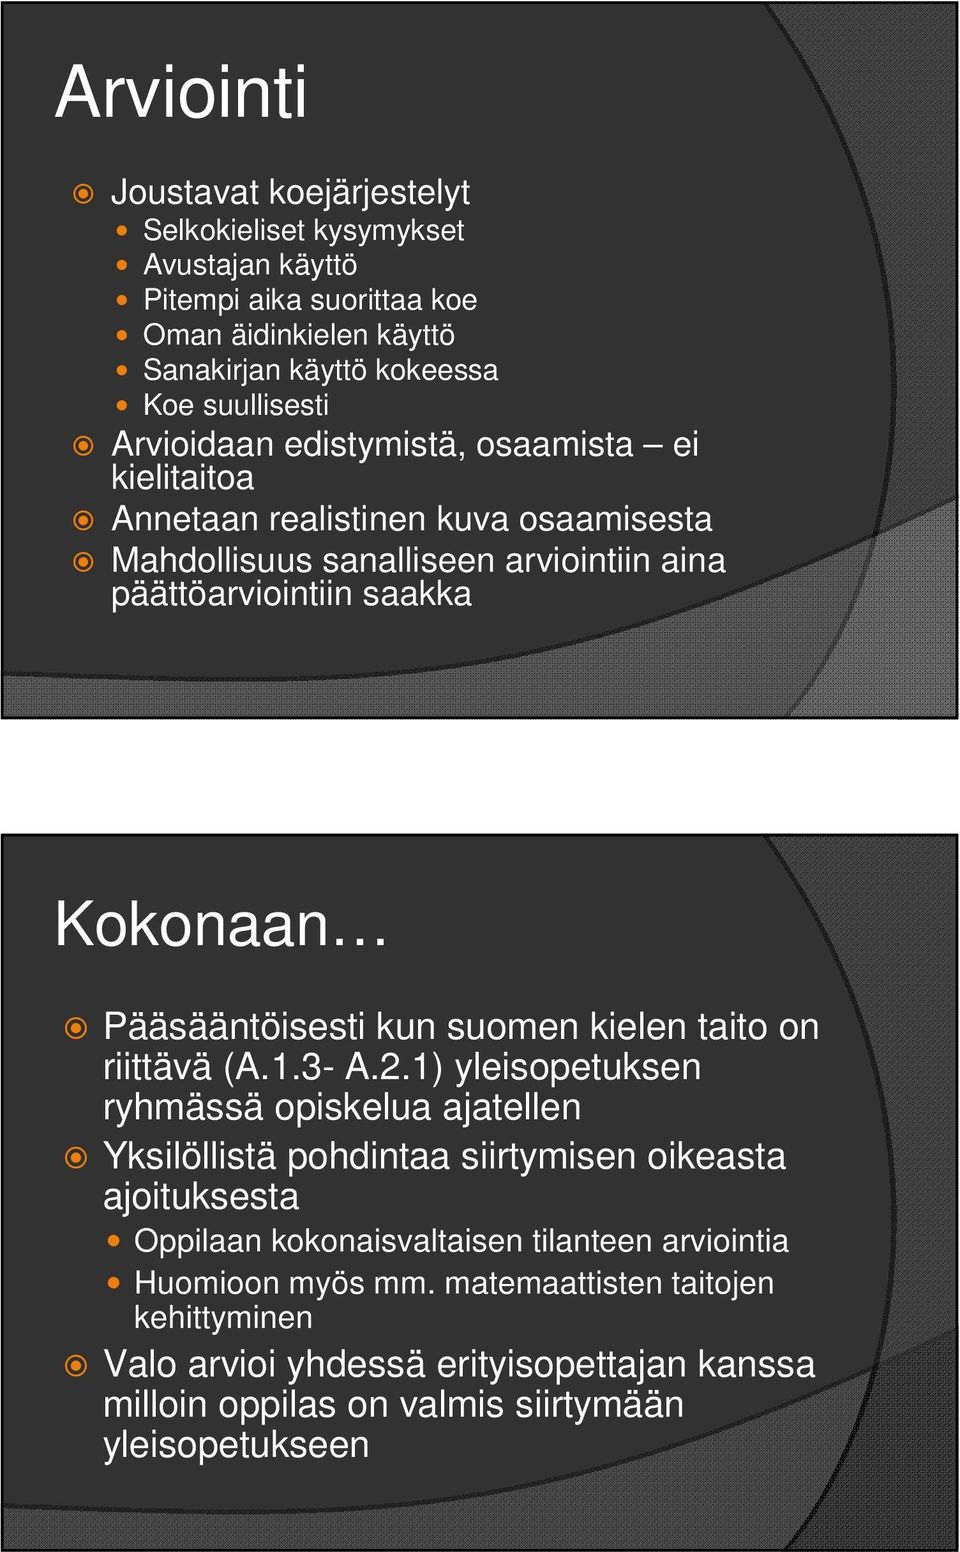 Pääsääntöisesti kun suomen kielen taito on riittävä (A.1.3- A.2.